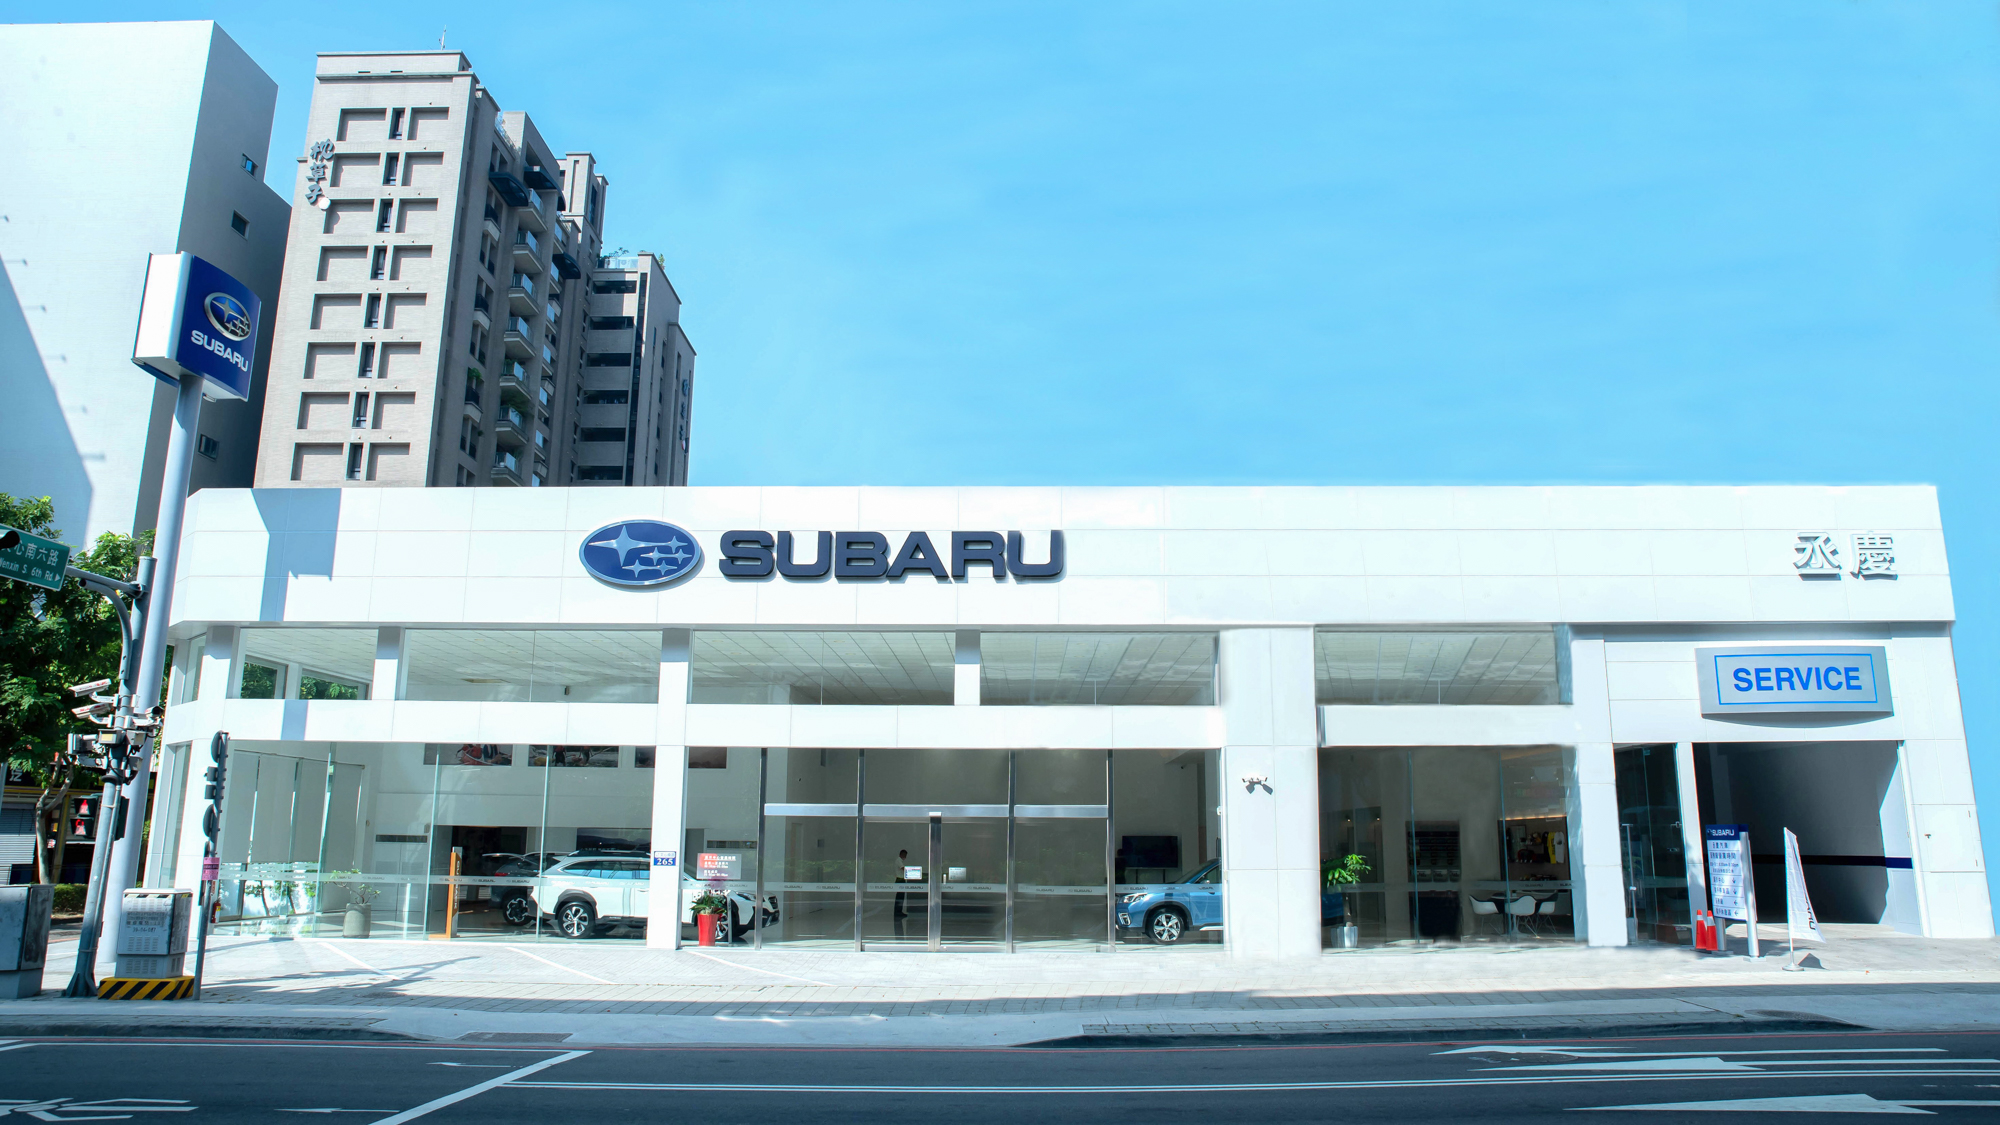 全新 Subaru 南台中丞慶展示暨售後服務中心正式啟用